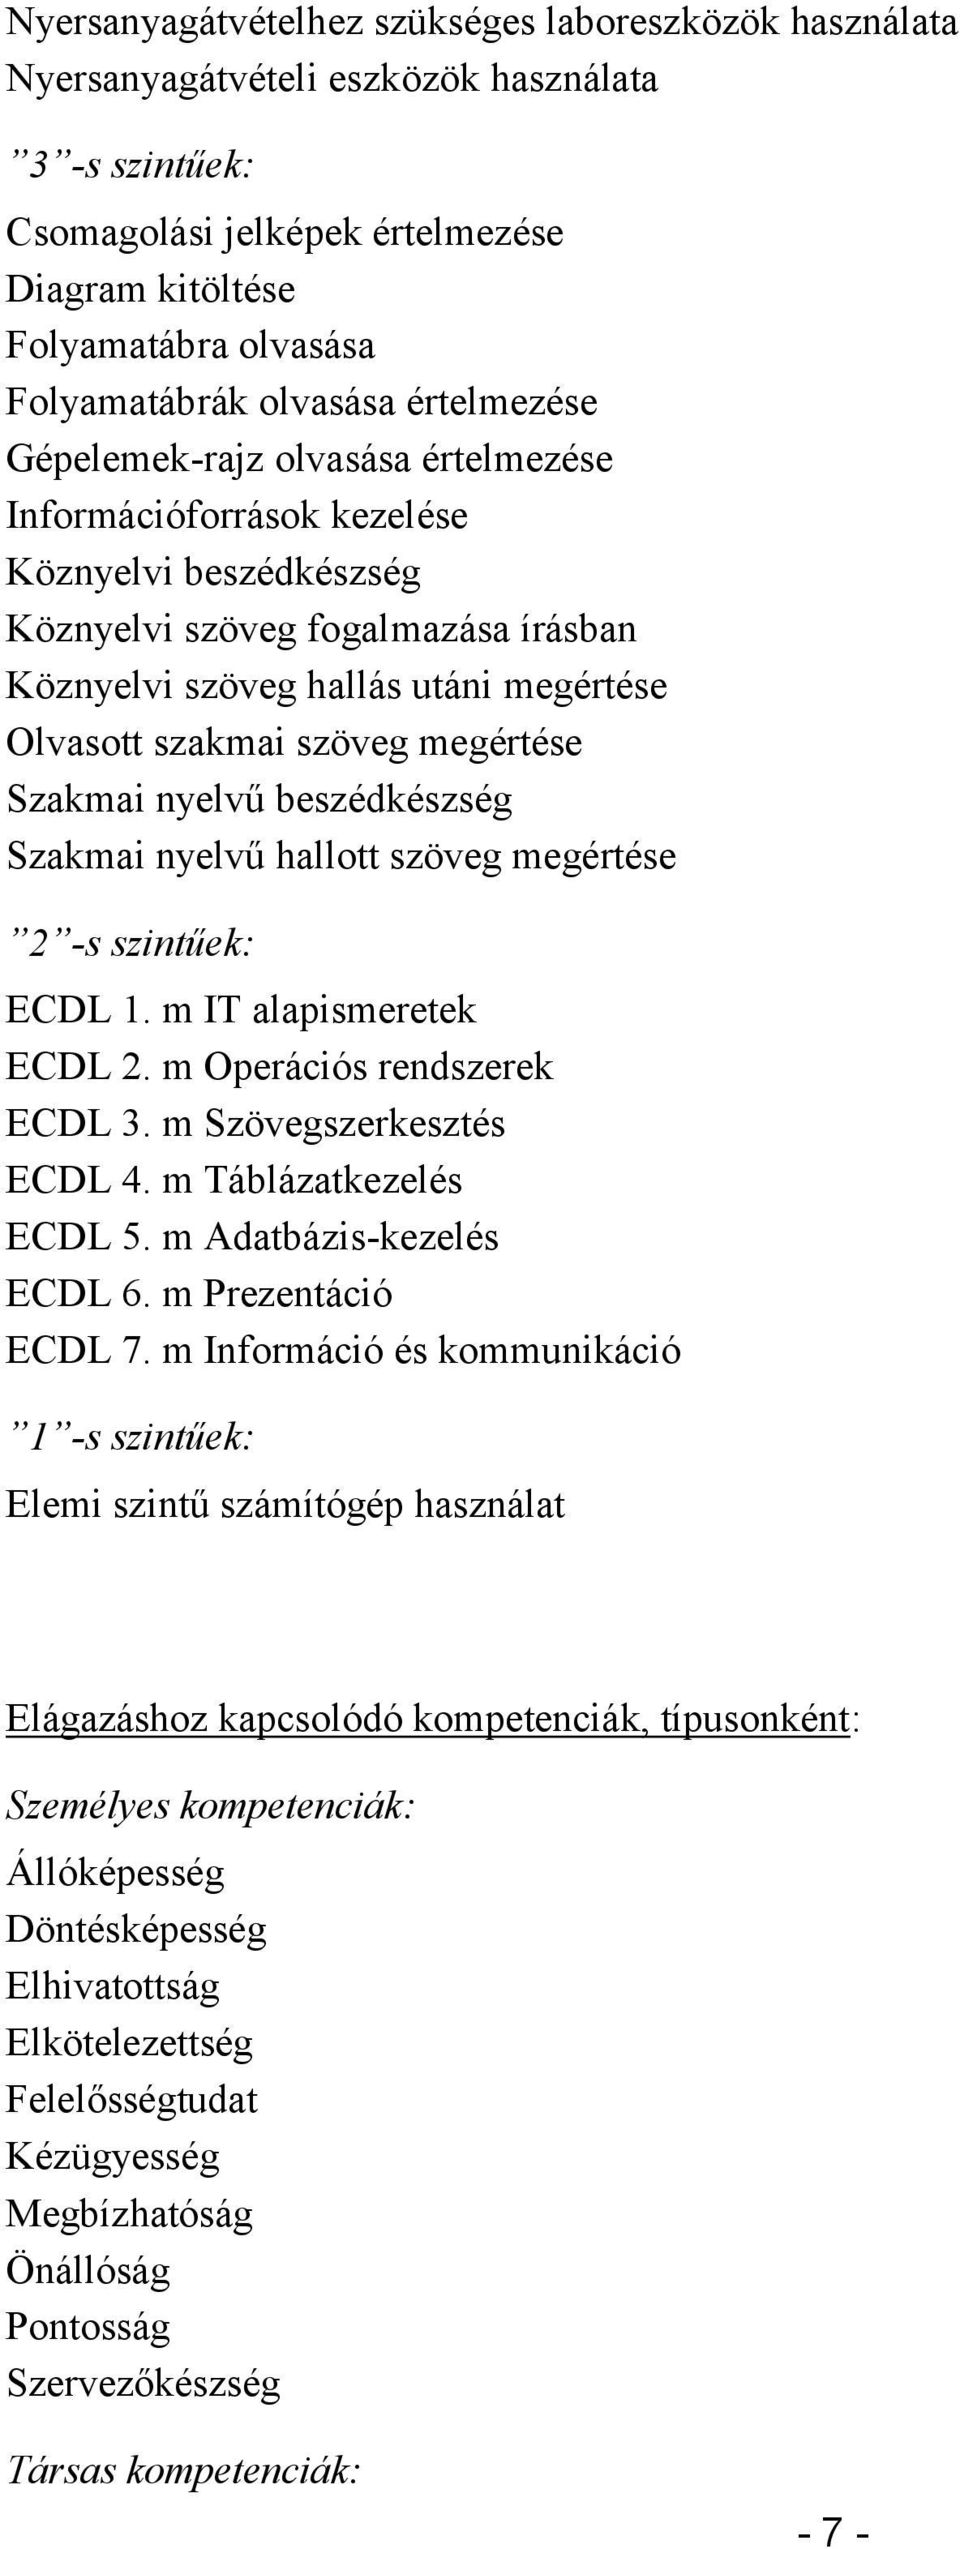 szakmai szöveg megértése Szakmai nyelvű beszédkészség Szakmai nyelvű hallott szöveg megértése 2 -s szintűek: ECDL 1. m IT alapismeretek ECDL 2. m Operációs rendszerek ECDL 3.